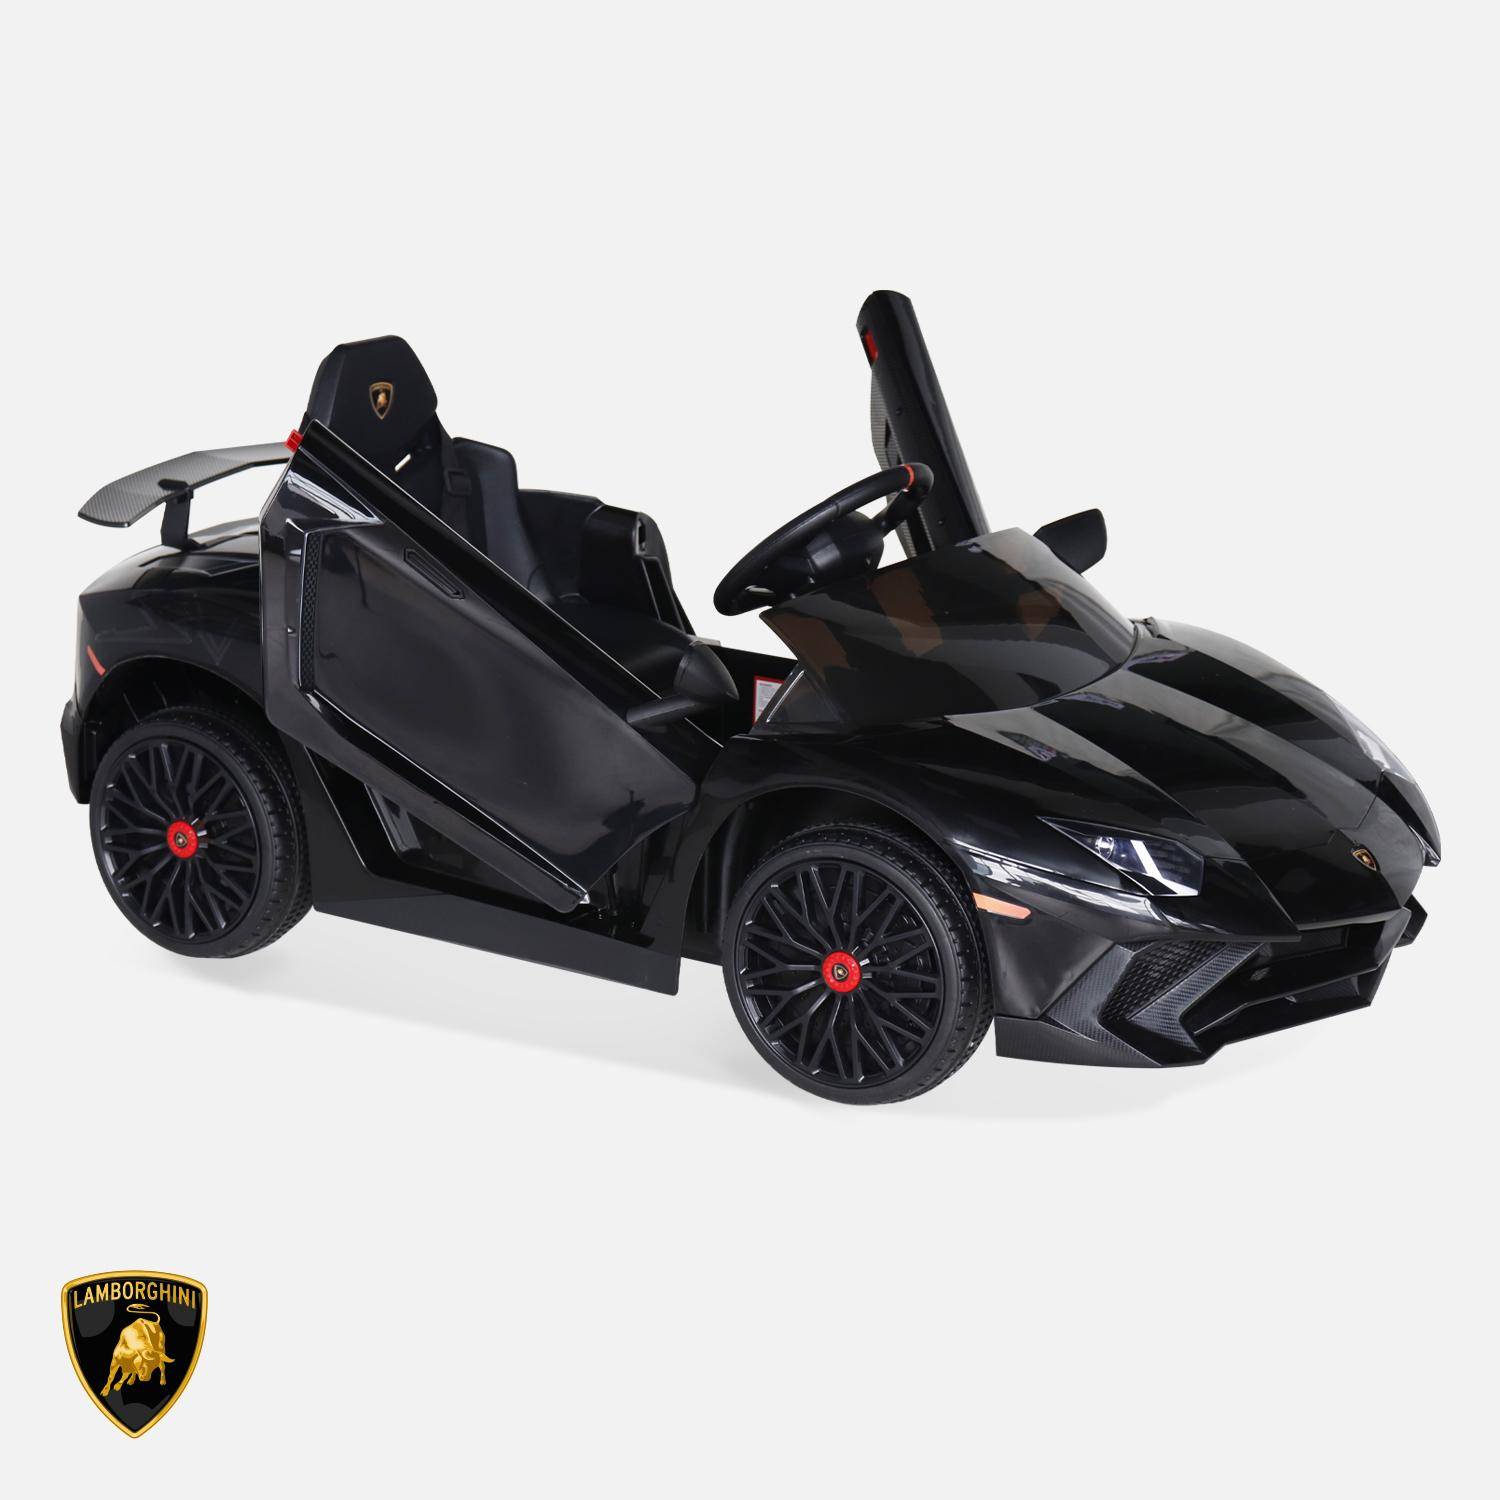 Voiture électrique 12V pour enfant Lamborghini, noir, 1 place, avec autoradio, télécommande, MP3, port USB et phares fonctionnels Photo2